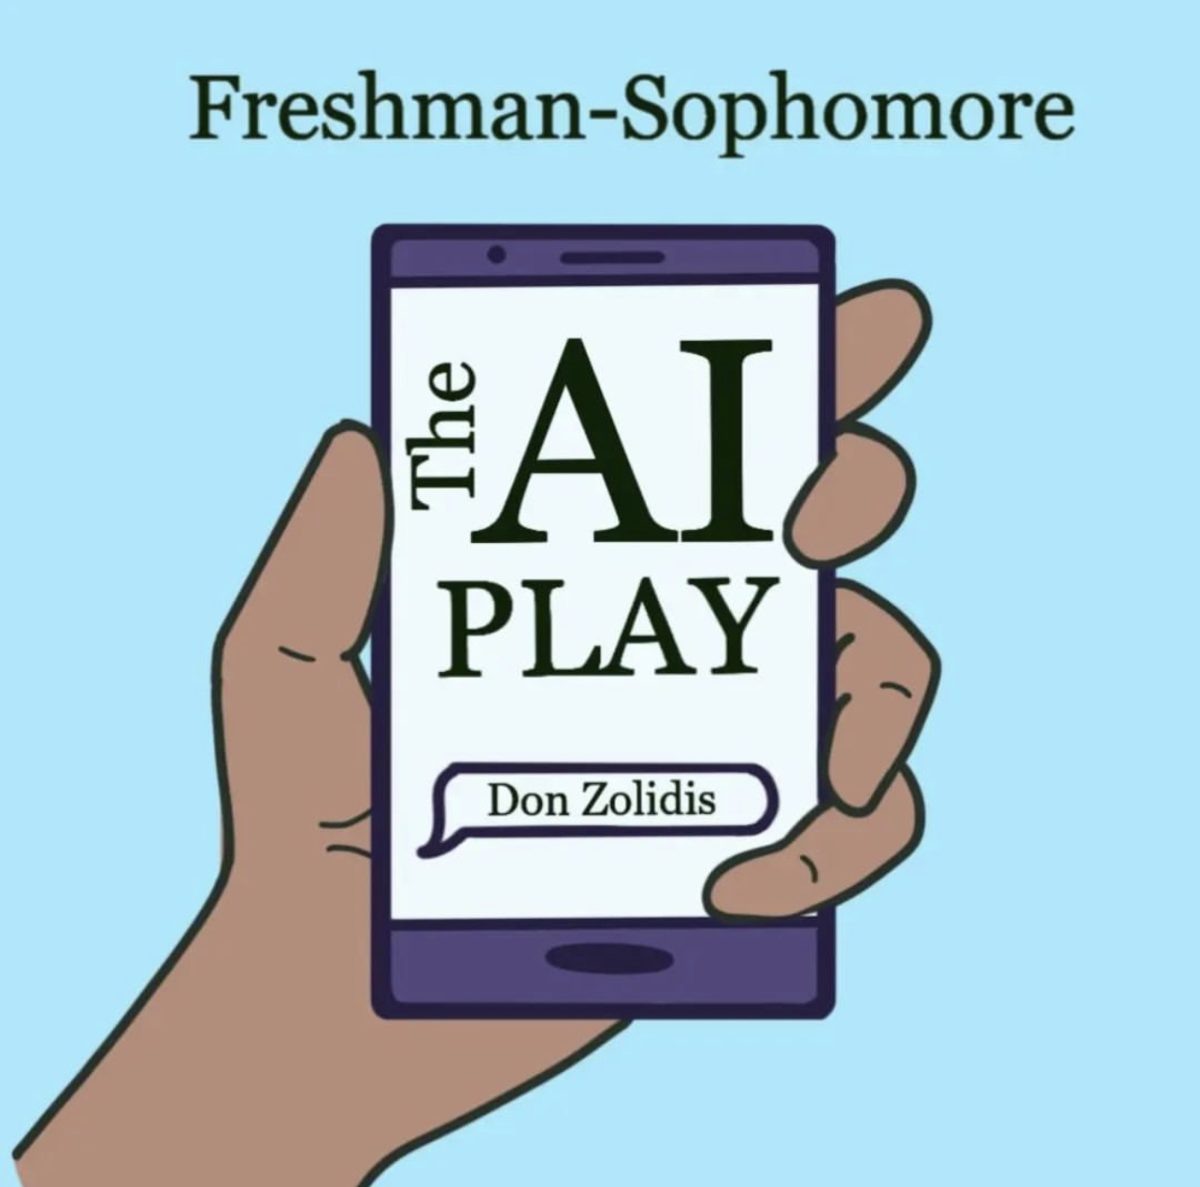 The+AI+Play